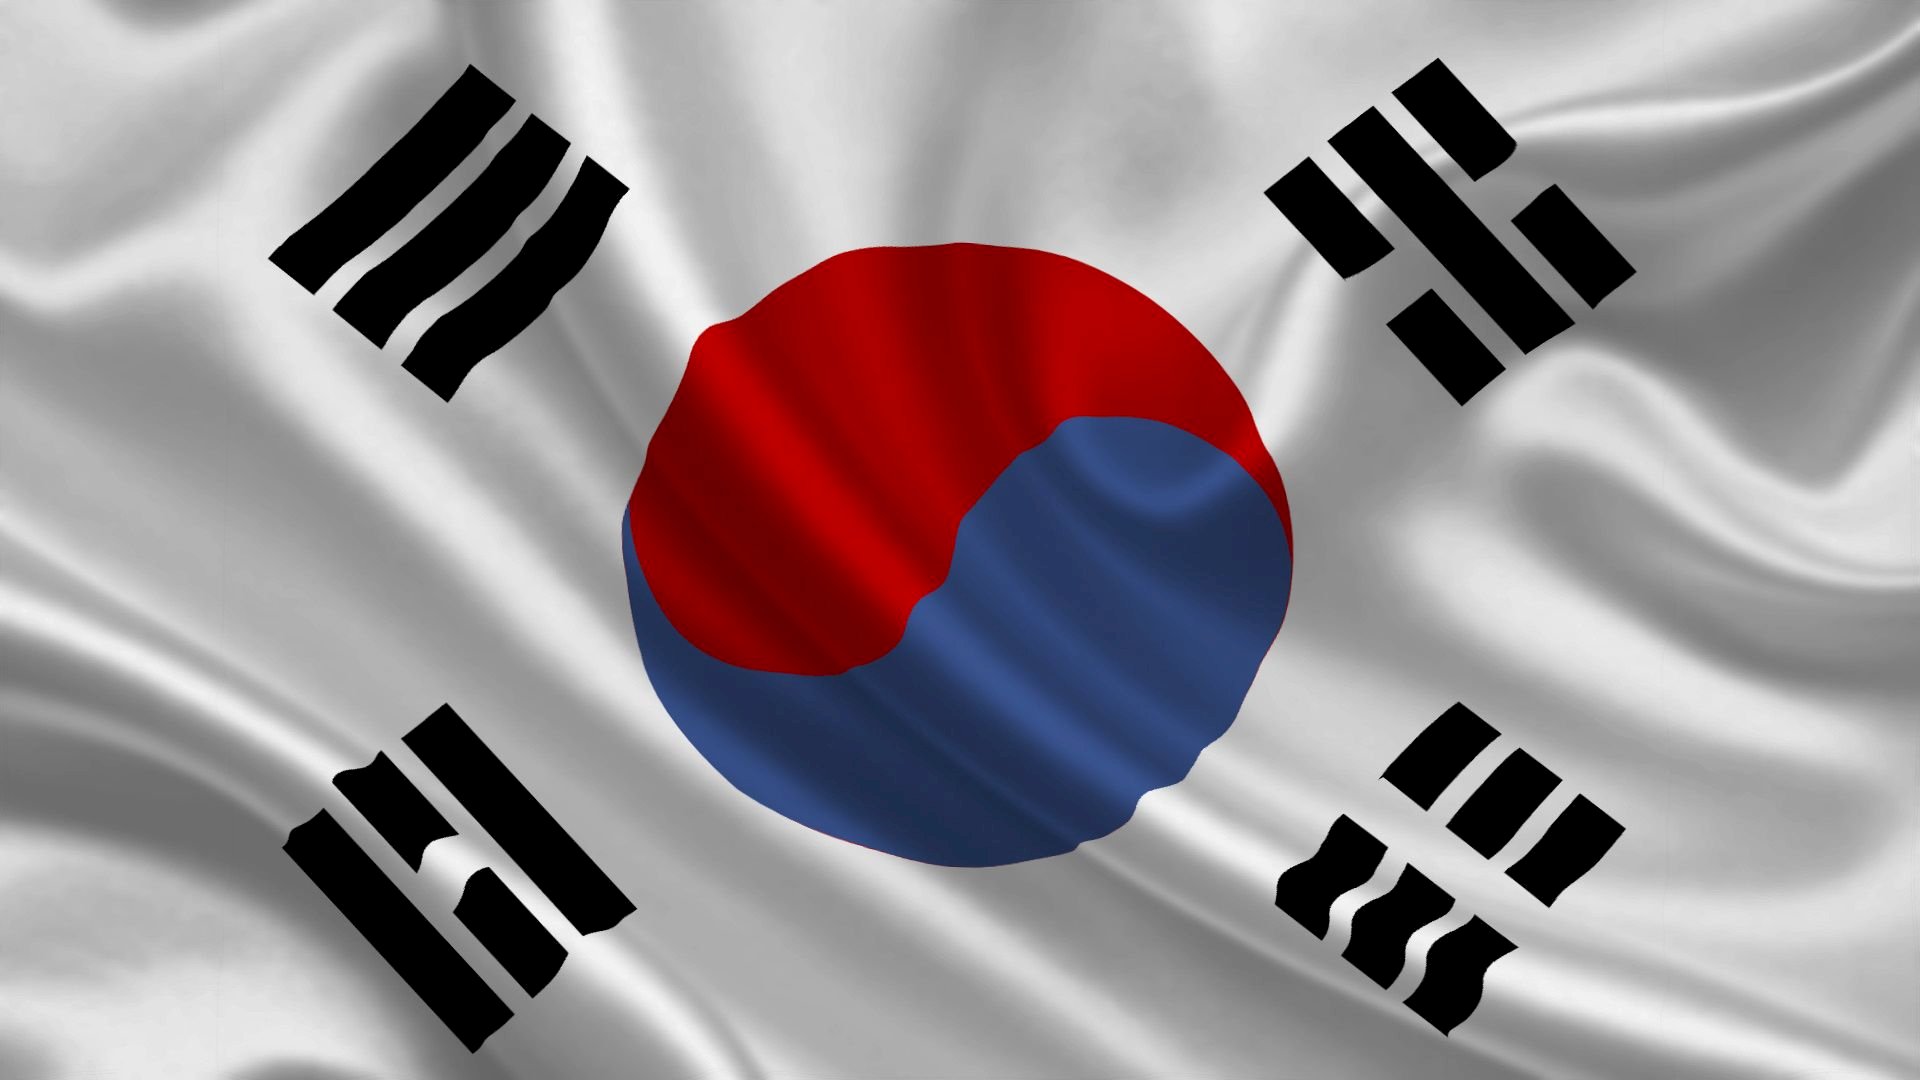 Cờ Hàn Quốc: Hình ảnh cờ Hàn Quốc đầy cảm xúc sẽ khiến bạn cảm thấy tự hào về đất nước xinh đẹp này. Với màu đỏ trắng xanh đặc trưng và những dải sắc cầu vồng, cờ Hàn Quốc truyền tải thông điệp về sự đoàn kết và bình đẳng. Xem hình ảnh cờ Hàn Quốc để khơi gợi niềm tự hào và tình yêu đất nước trong bạn.